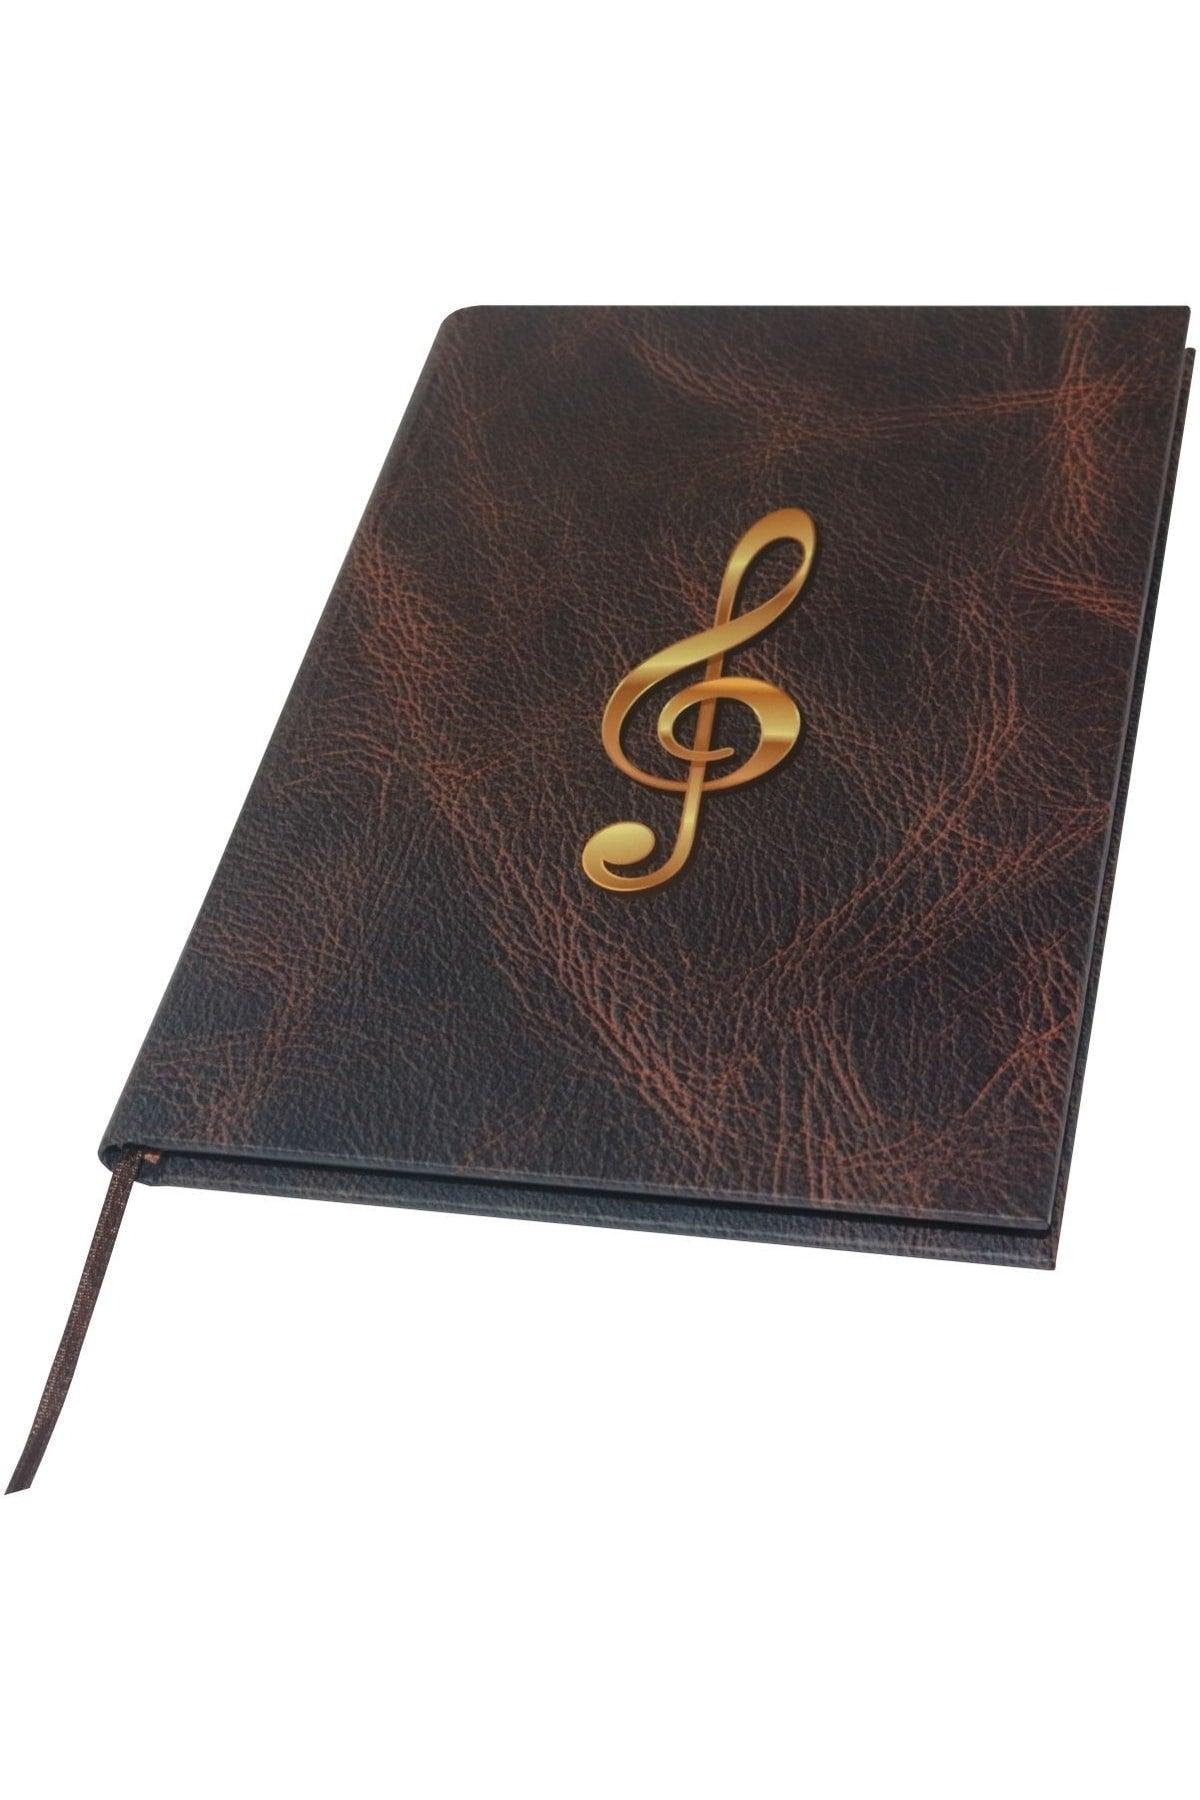 Piano Notebook (Left Fa Key) - Custom